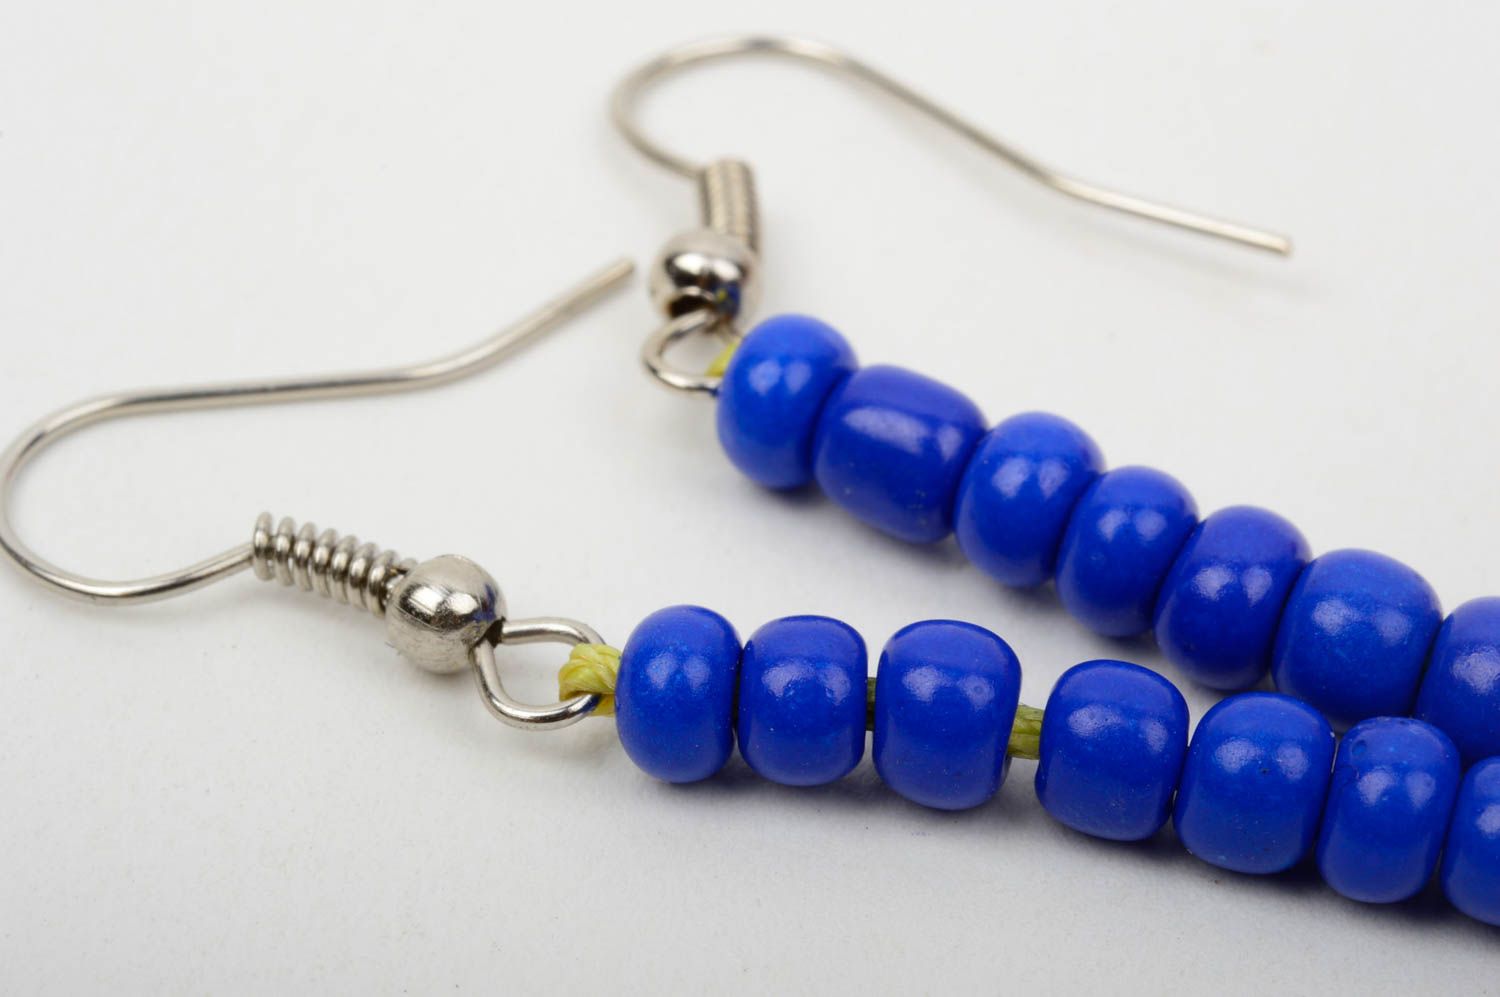 Handmade beads earrings designer earrings beaded earrings for girl gift ideas photo 5